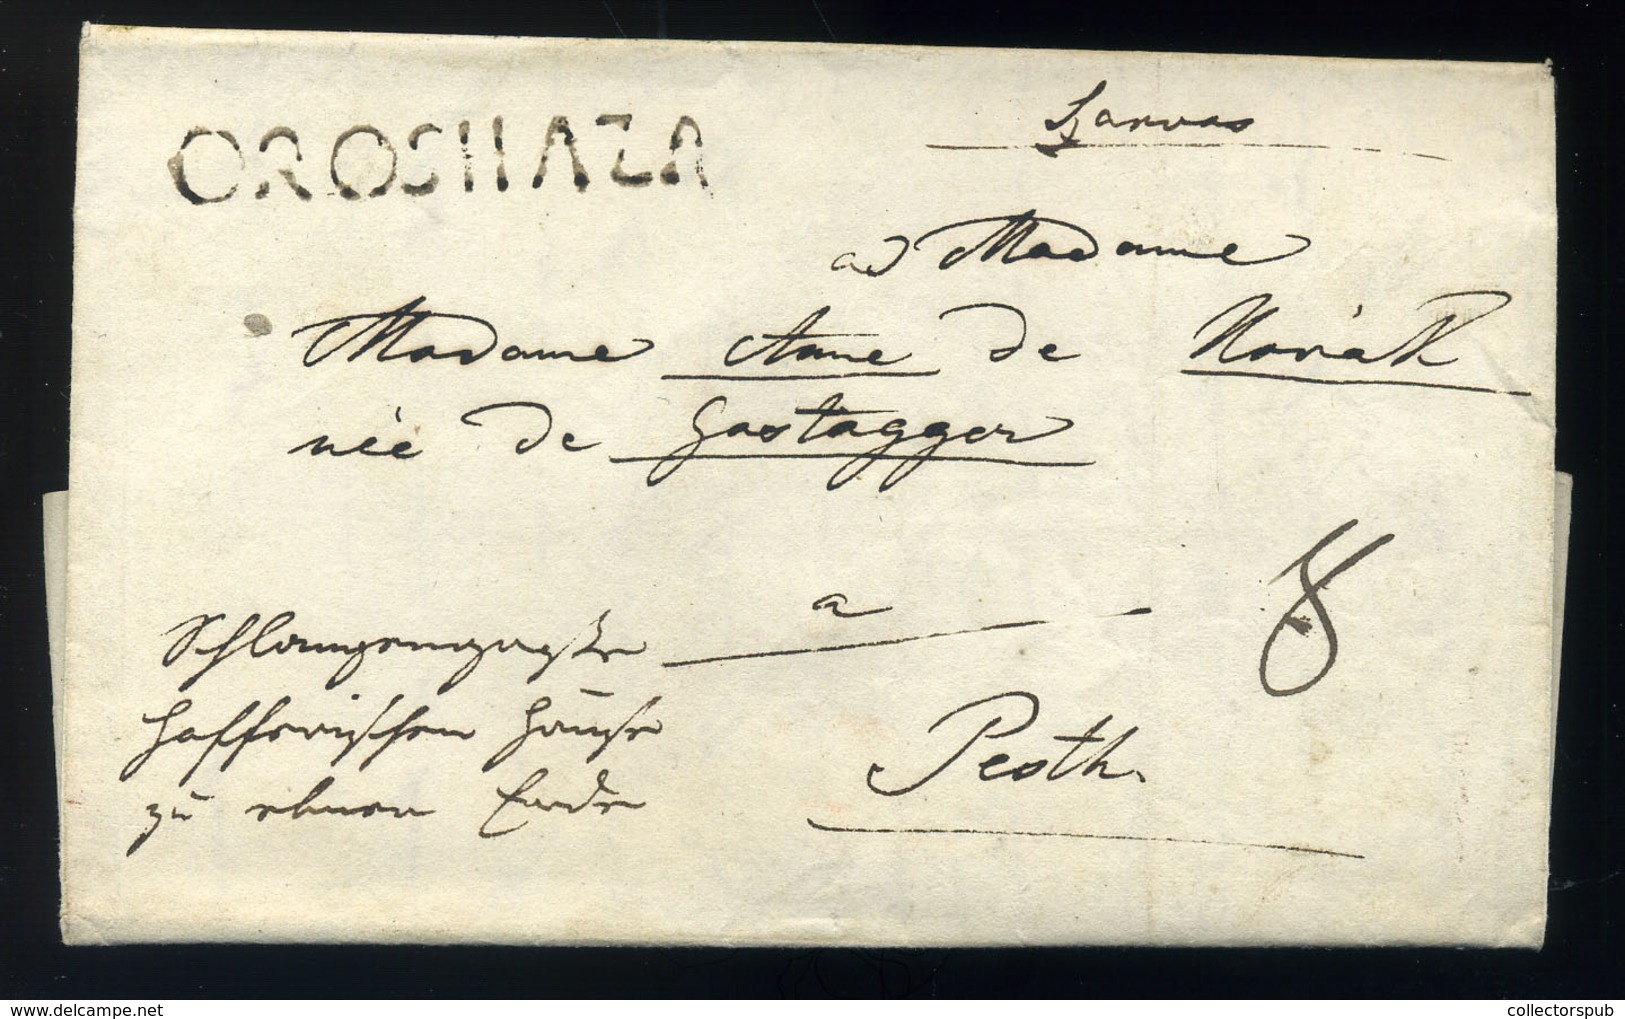 OROSHÁZA 1835. Cca. Szarvason Megírt Portós Levél , Tartalommal Pestre Küldve - ...-1867 Préphilatélie